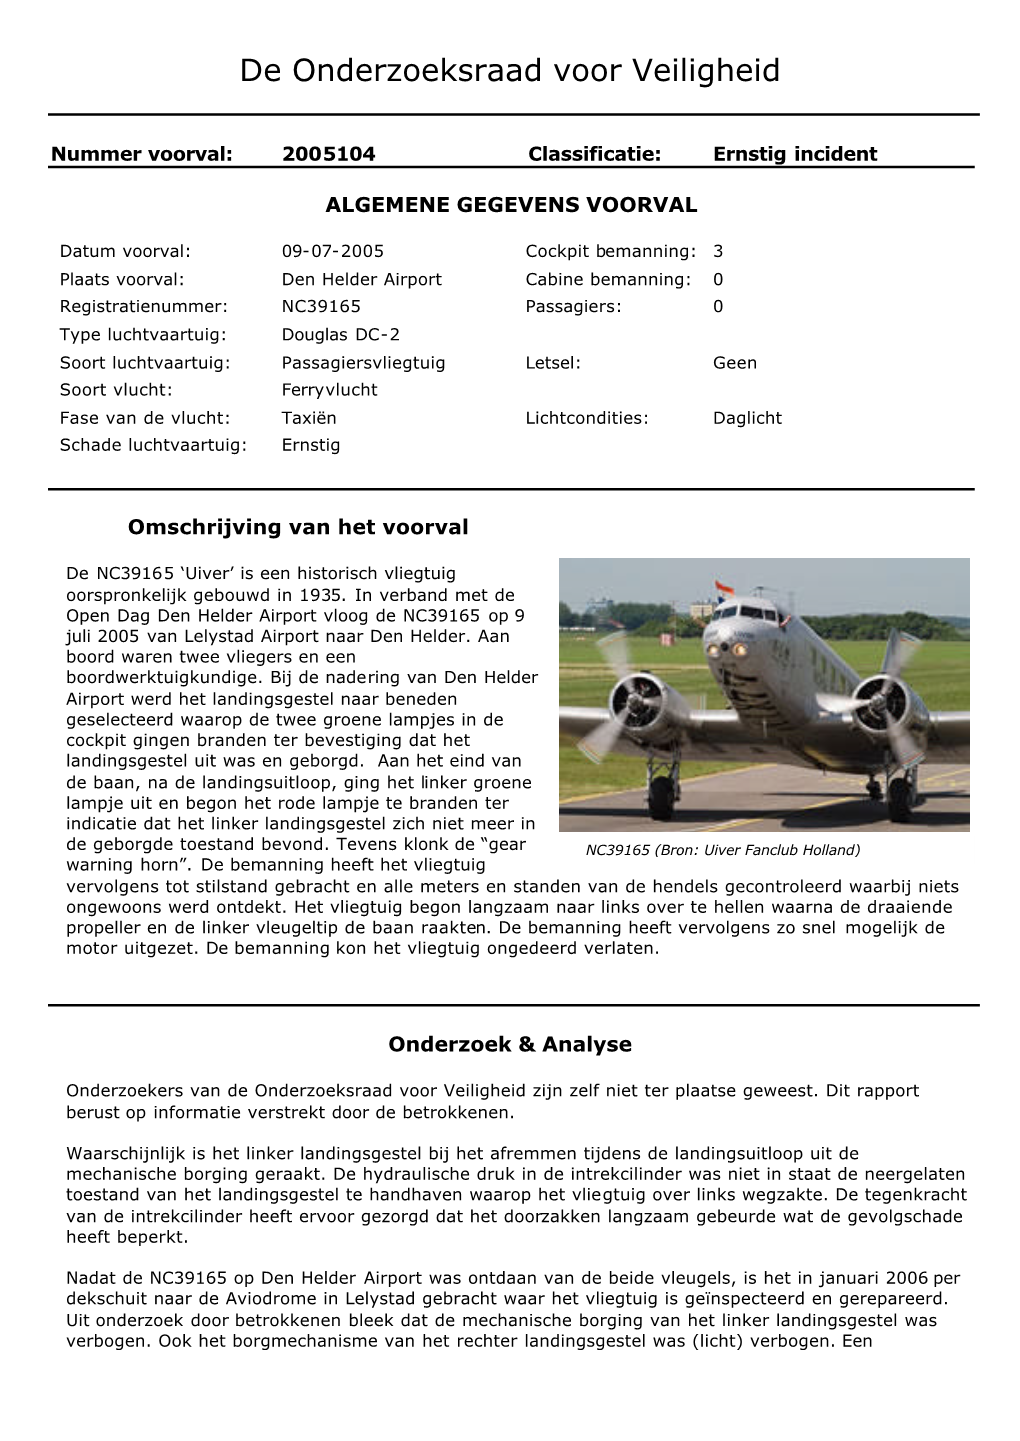 Report Mechanische Borging Landingsgestel Verbogen, Douglas DC-2, Den Helder Airport, 9 Juli 2005